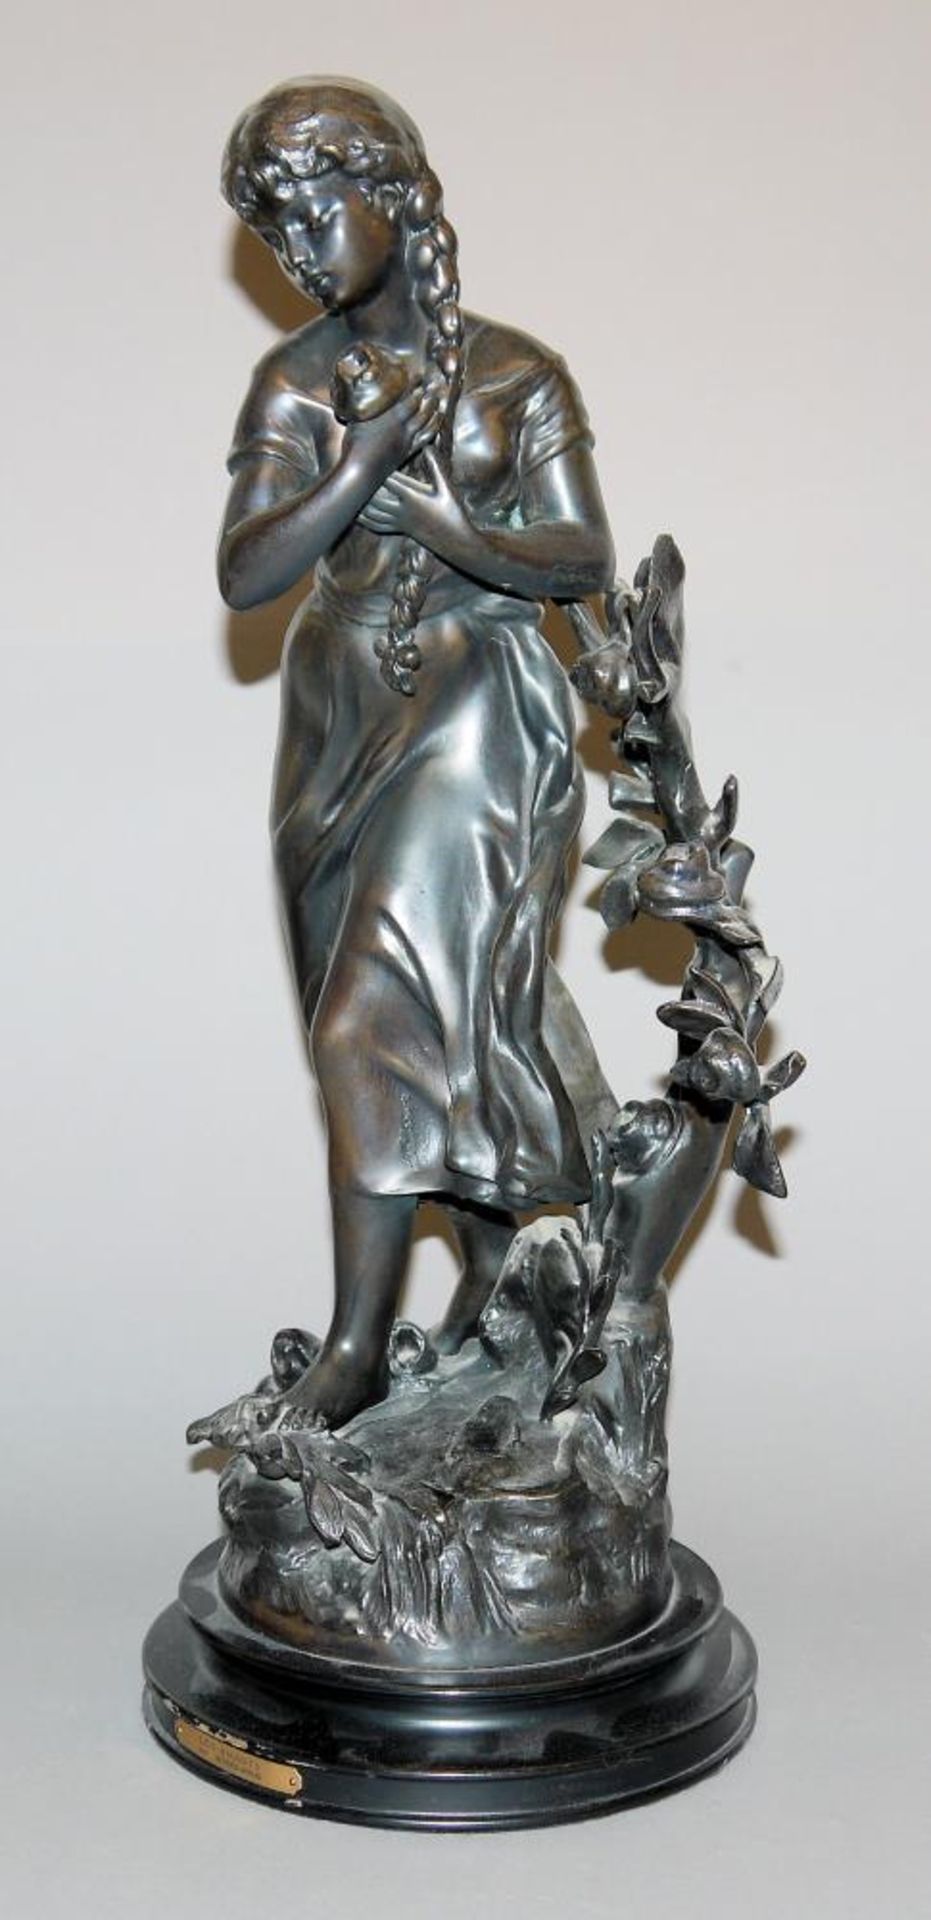 Mathurin Moreau, „les amants“, große Bronzeplastik einer jungen Frau, postumer Guss nach Erstguss um